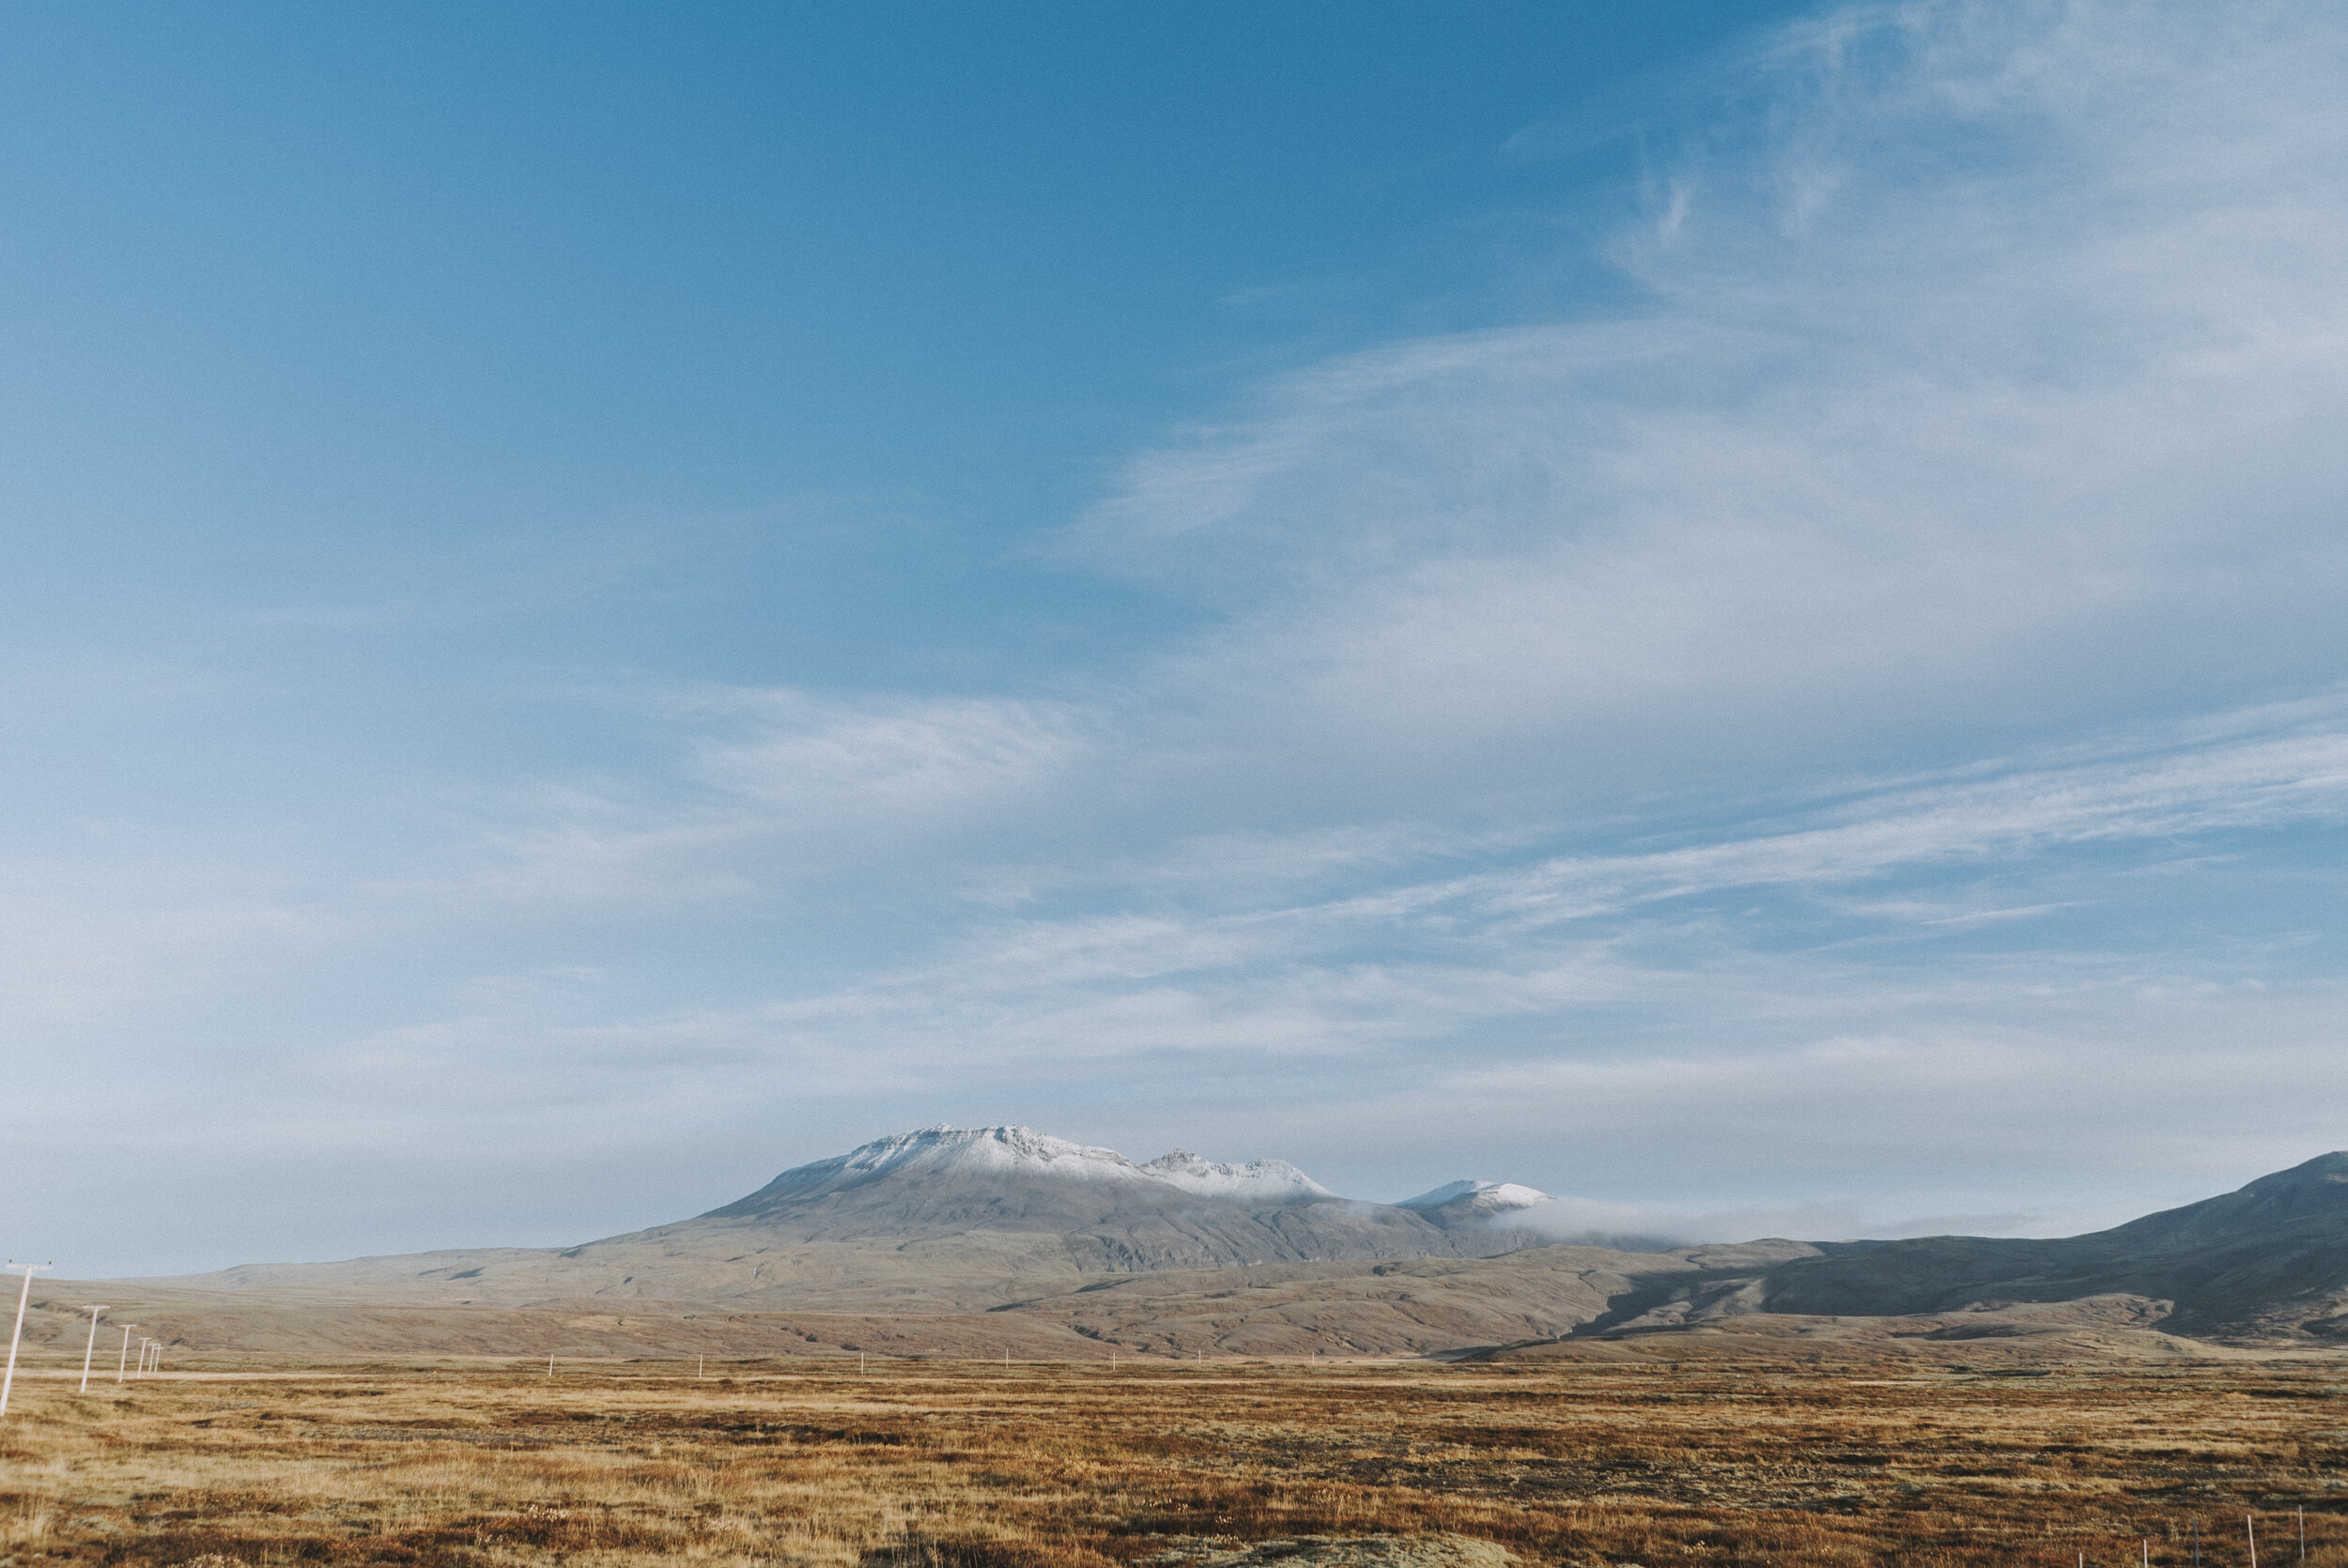  Công viên quốc gia Thingvellir, được thành lập vào năm 1930, kỷ niệm một nghìn năm thành lập Nghị viện đại hội đồng của Iceland (Althing), nhằm bảo tồn các giá trị còn lại của tổ chức Althing (từ năm 930 đến năm 1789), là biểu tượng về độc lập của I